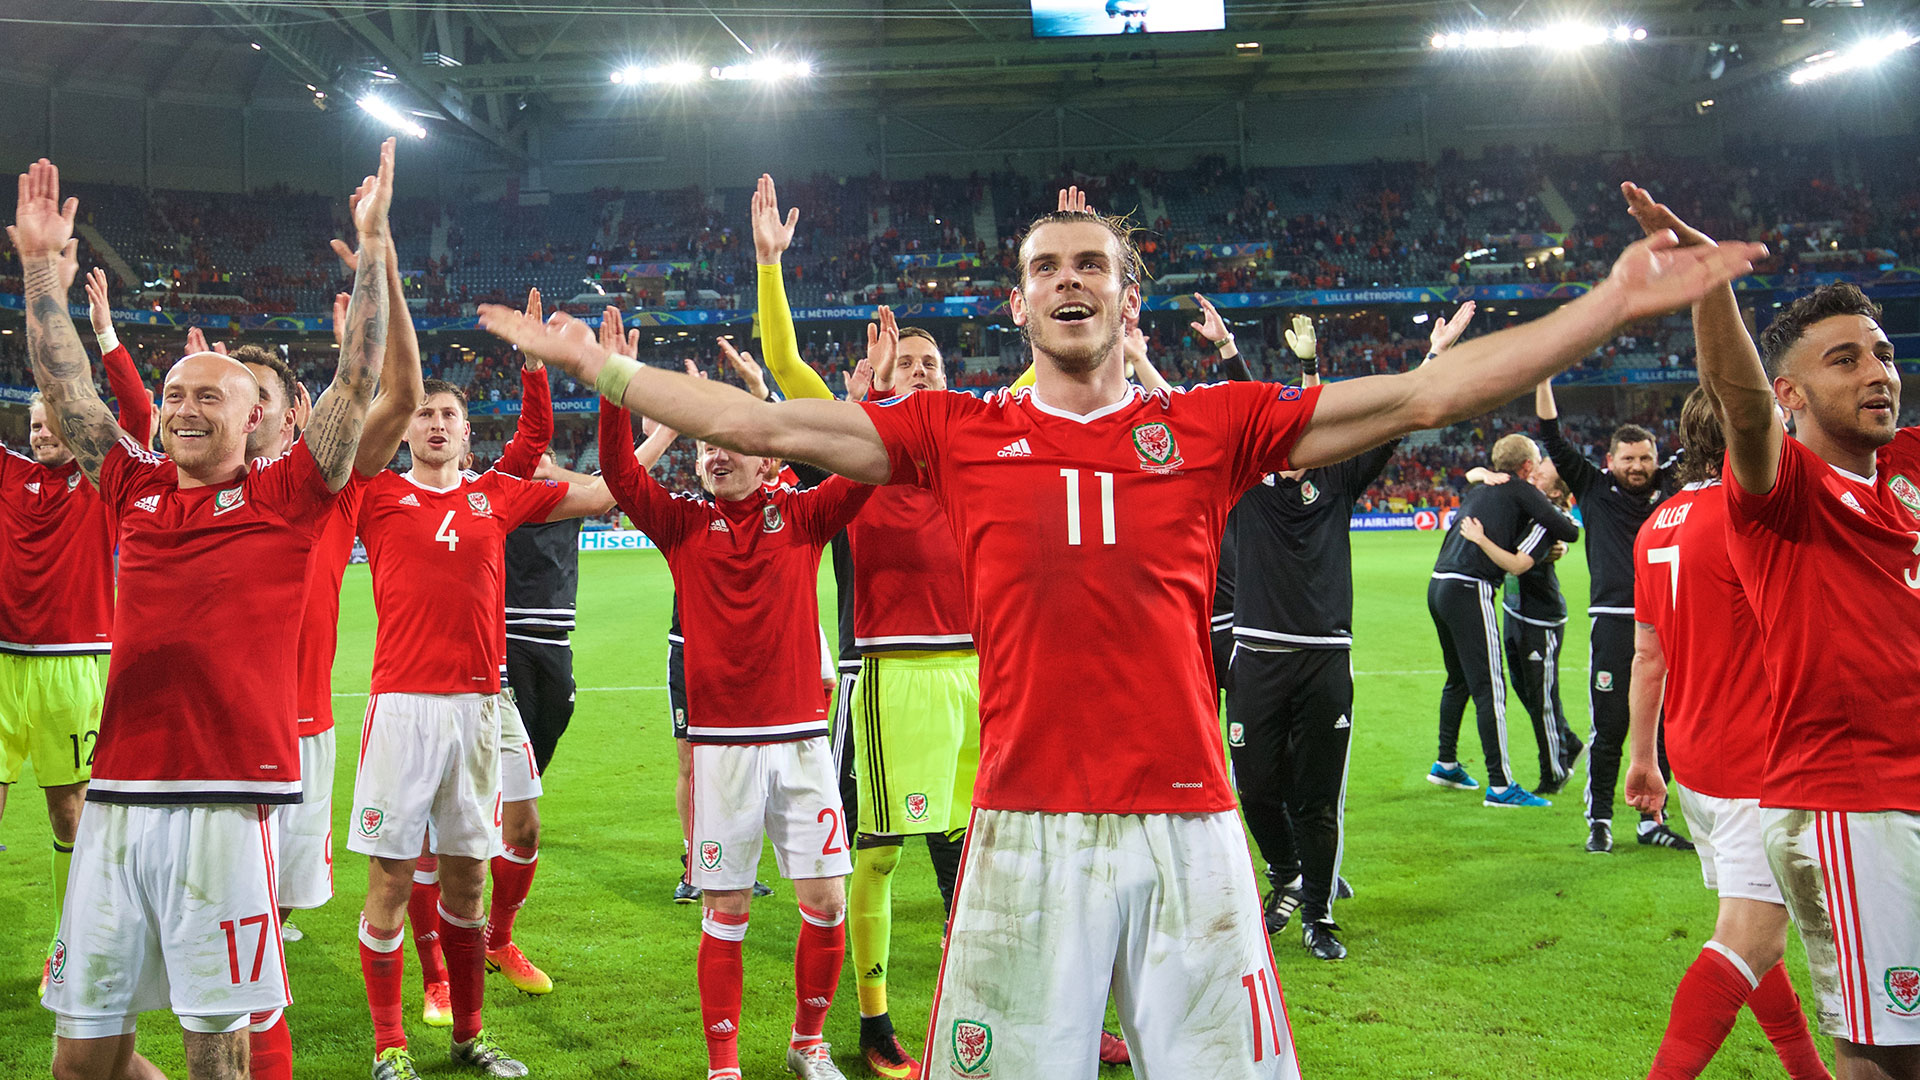 Wales Euro team celebrates